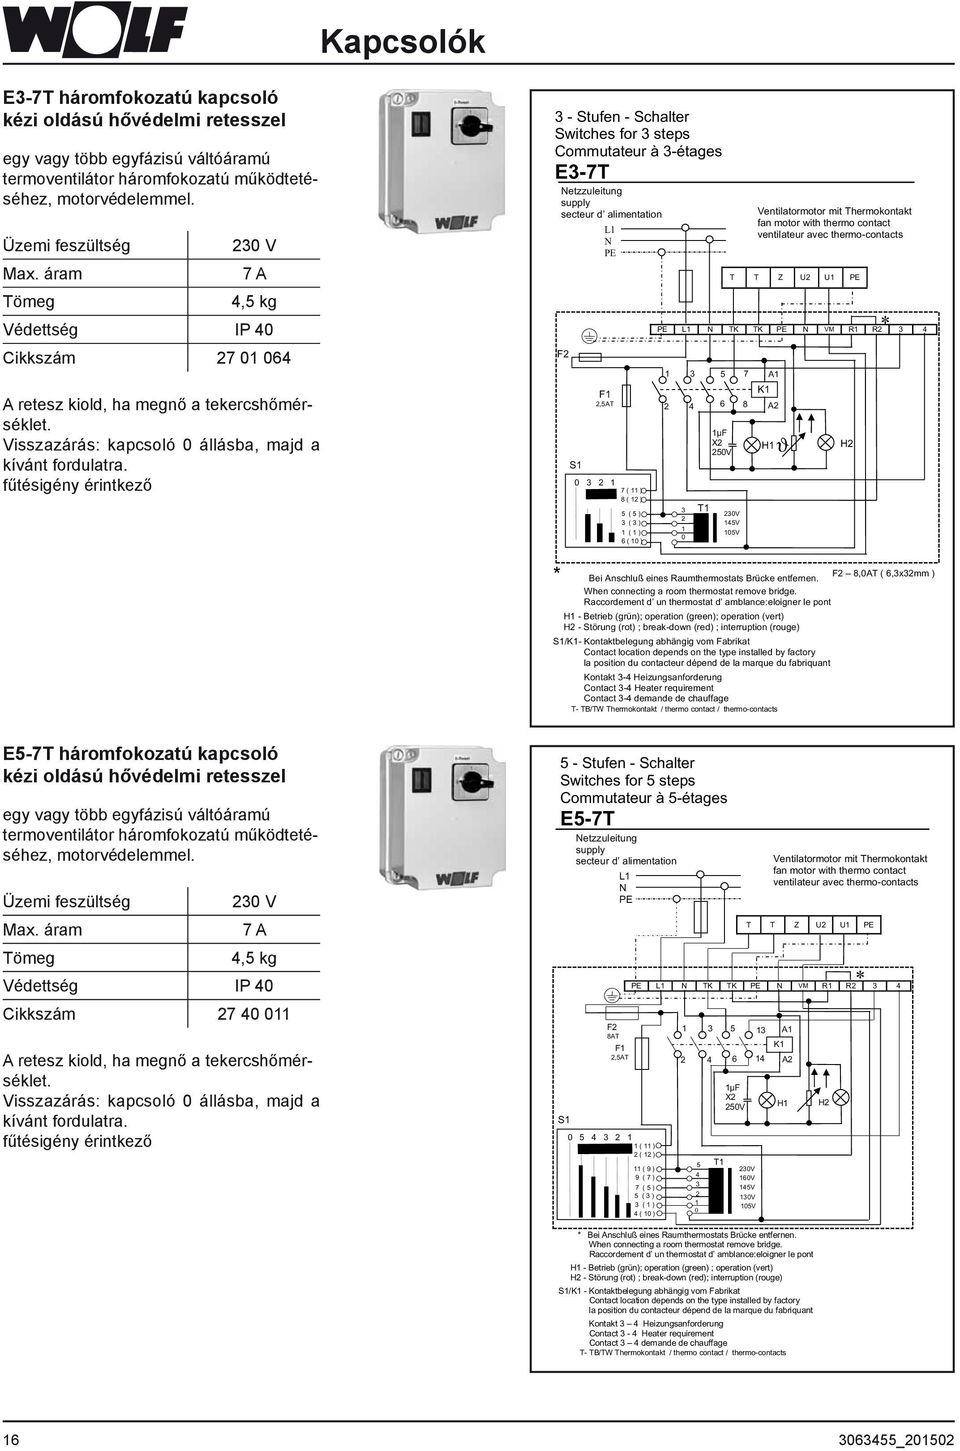 fűtésigény érintkező - Stufen - Schalter Switches for steps Commutateur à -étages E-7T Netzzuleitung supply secteur d alimentation L N PE F F,5AT S 0 7 ( ) 8 ( ) 5 ( 5 ) ( ) ( ) 6 ( 0 ) PE L N TK TK